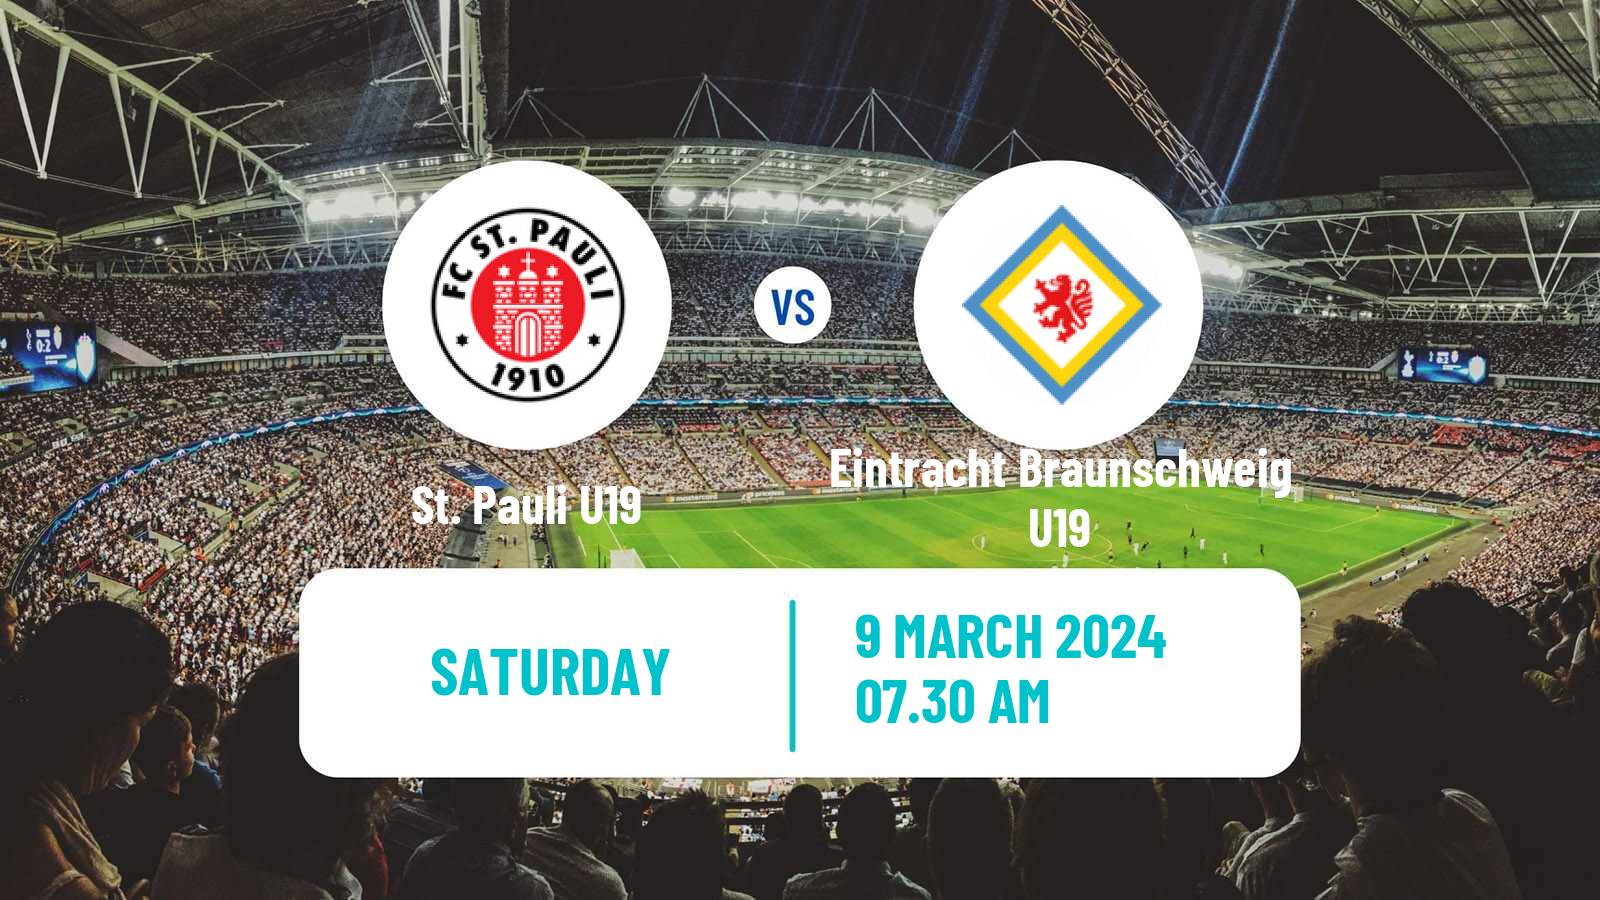 Soccer German Junioren Bundesliga North St. Pauli U19 - Eintracht Braunschweig U19